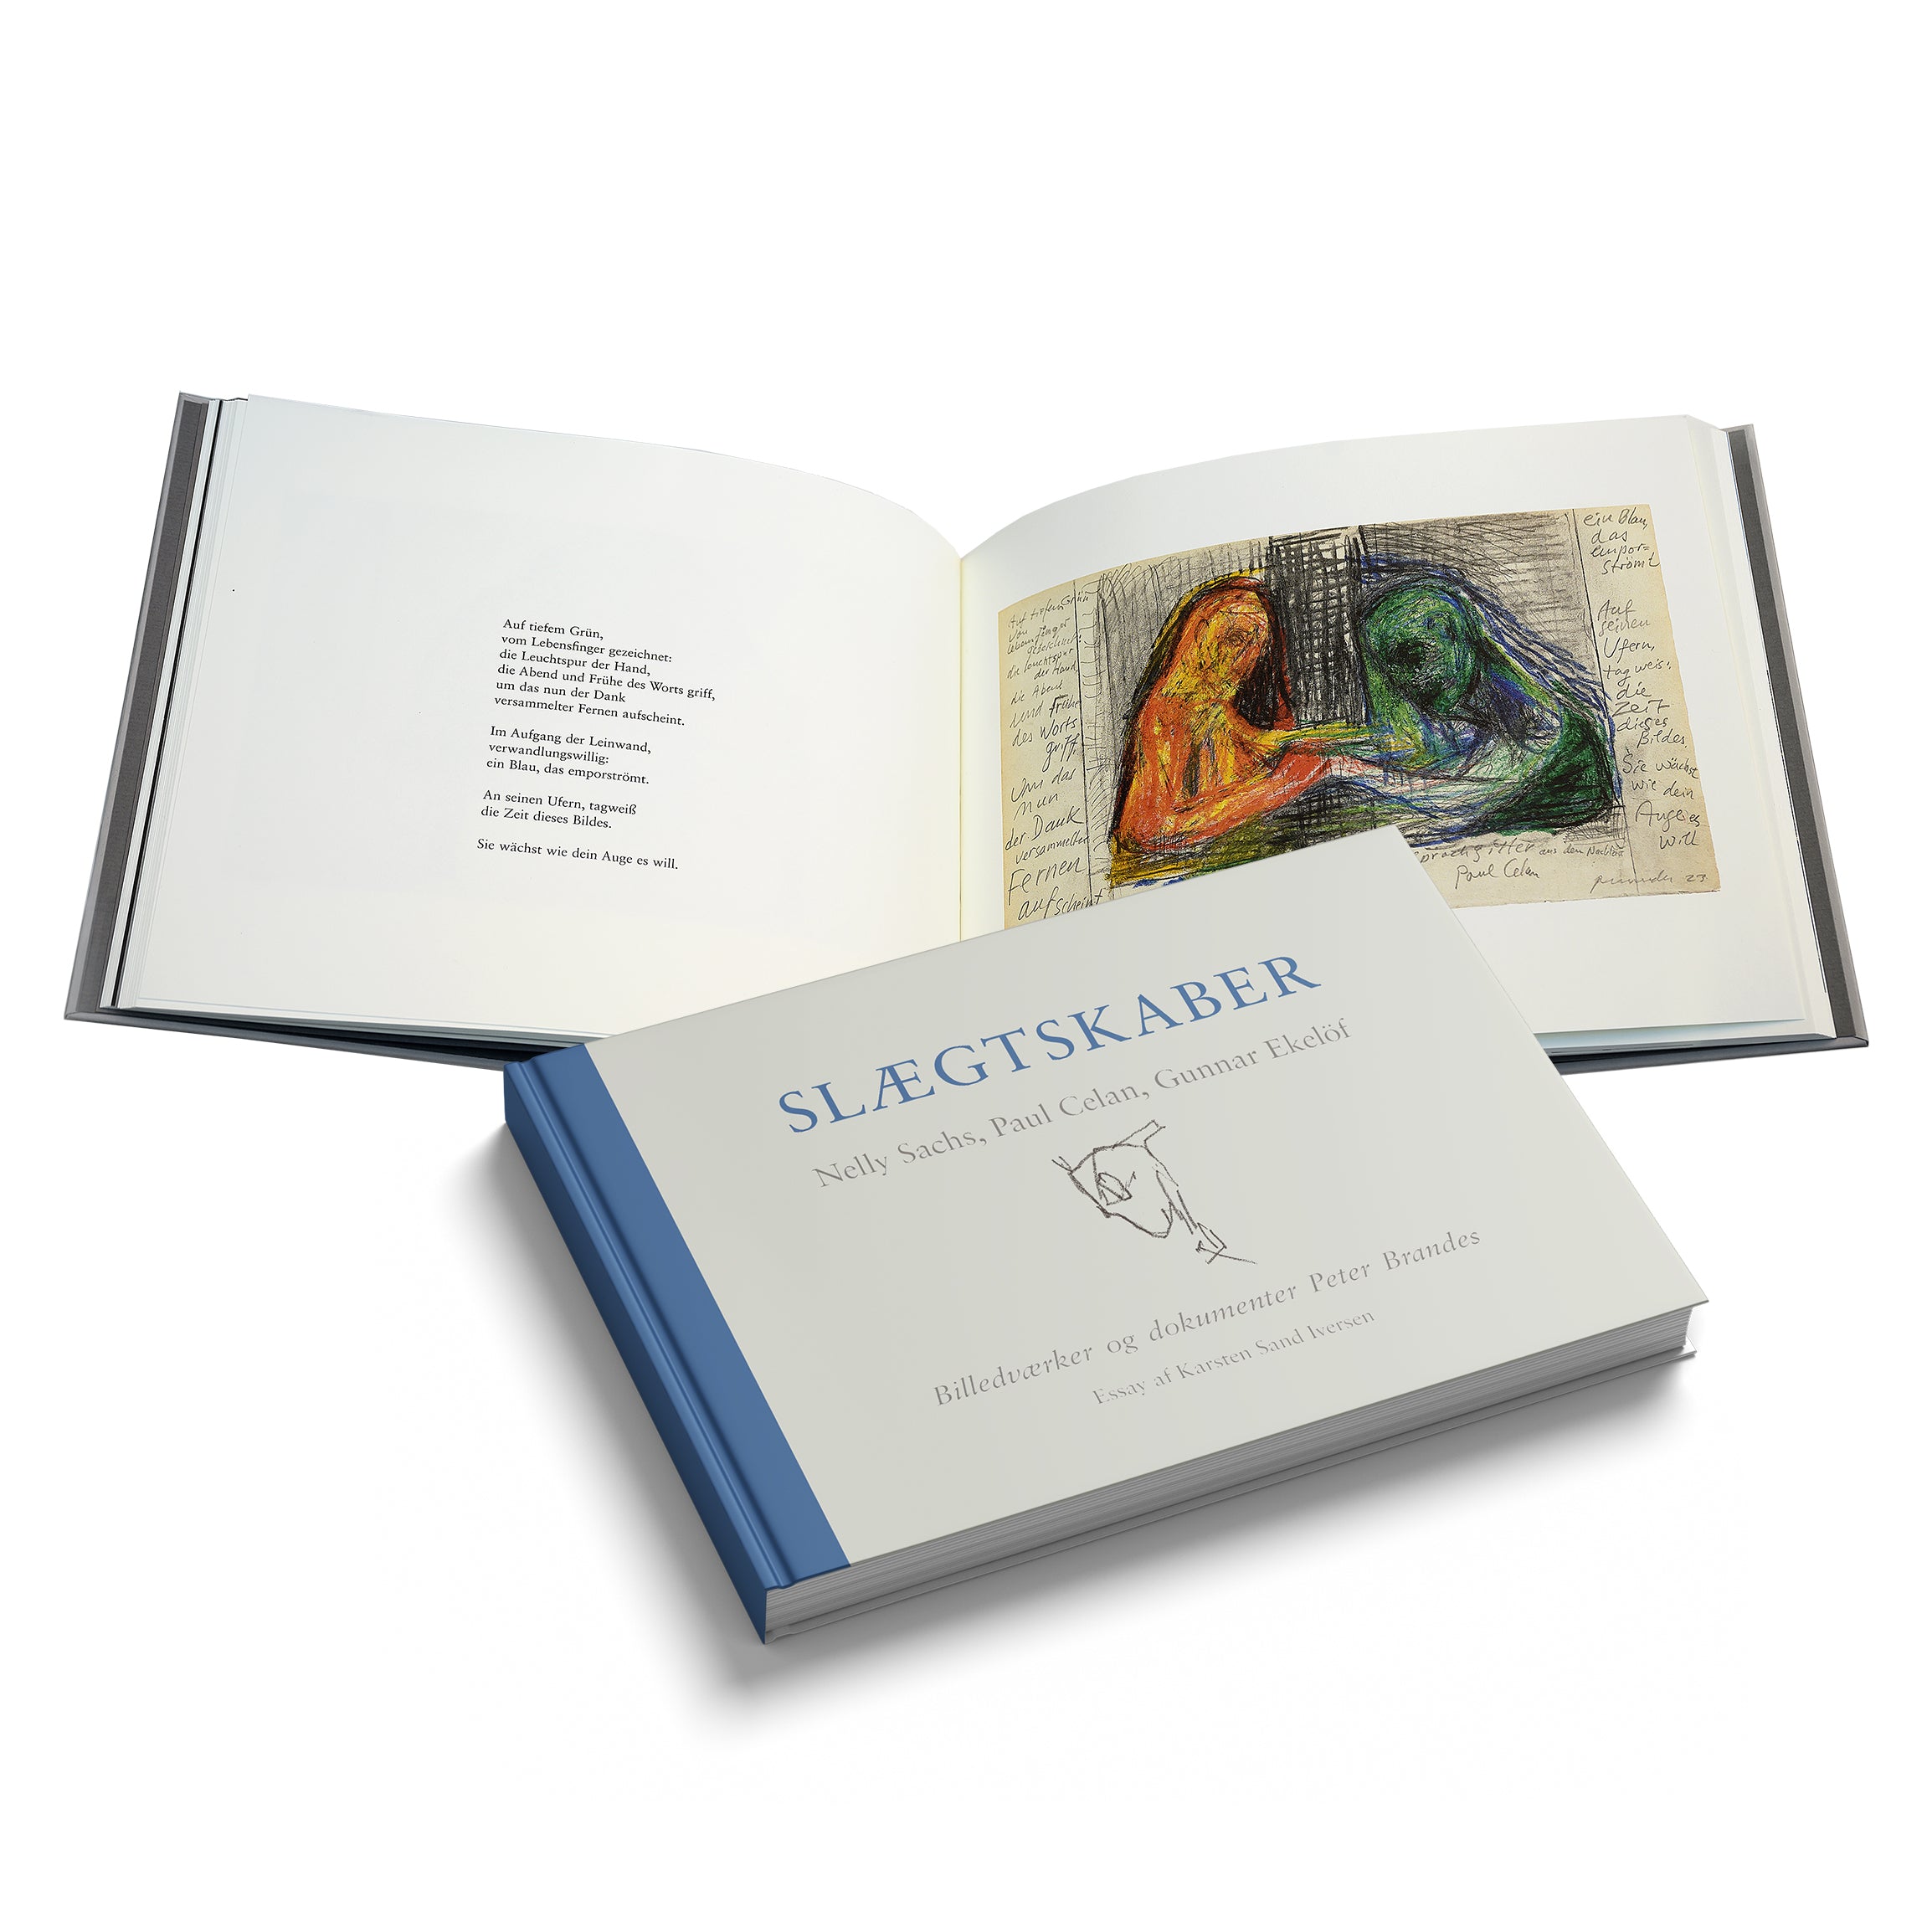 Peter Brandes litografi og signeret bog